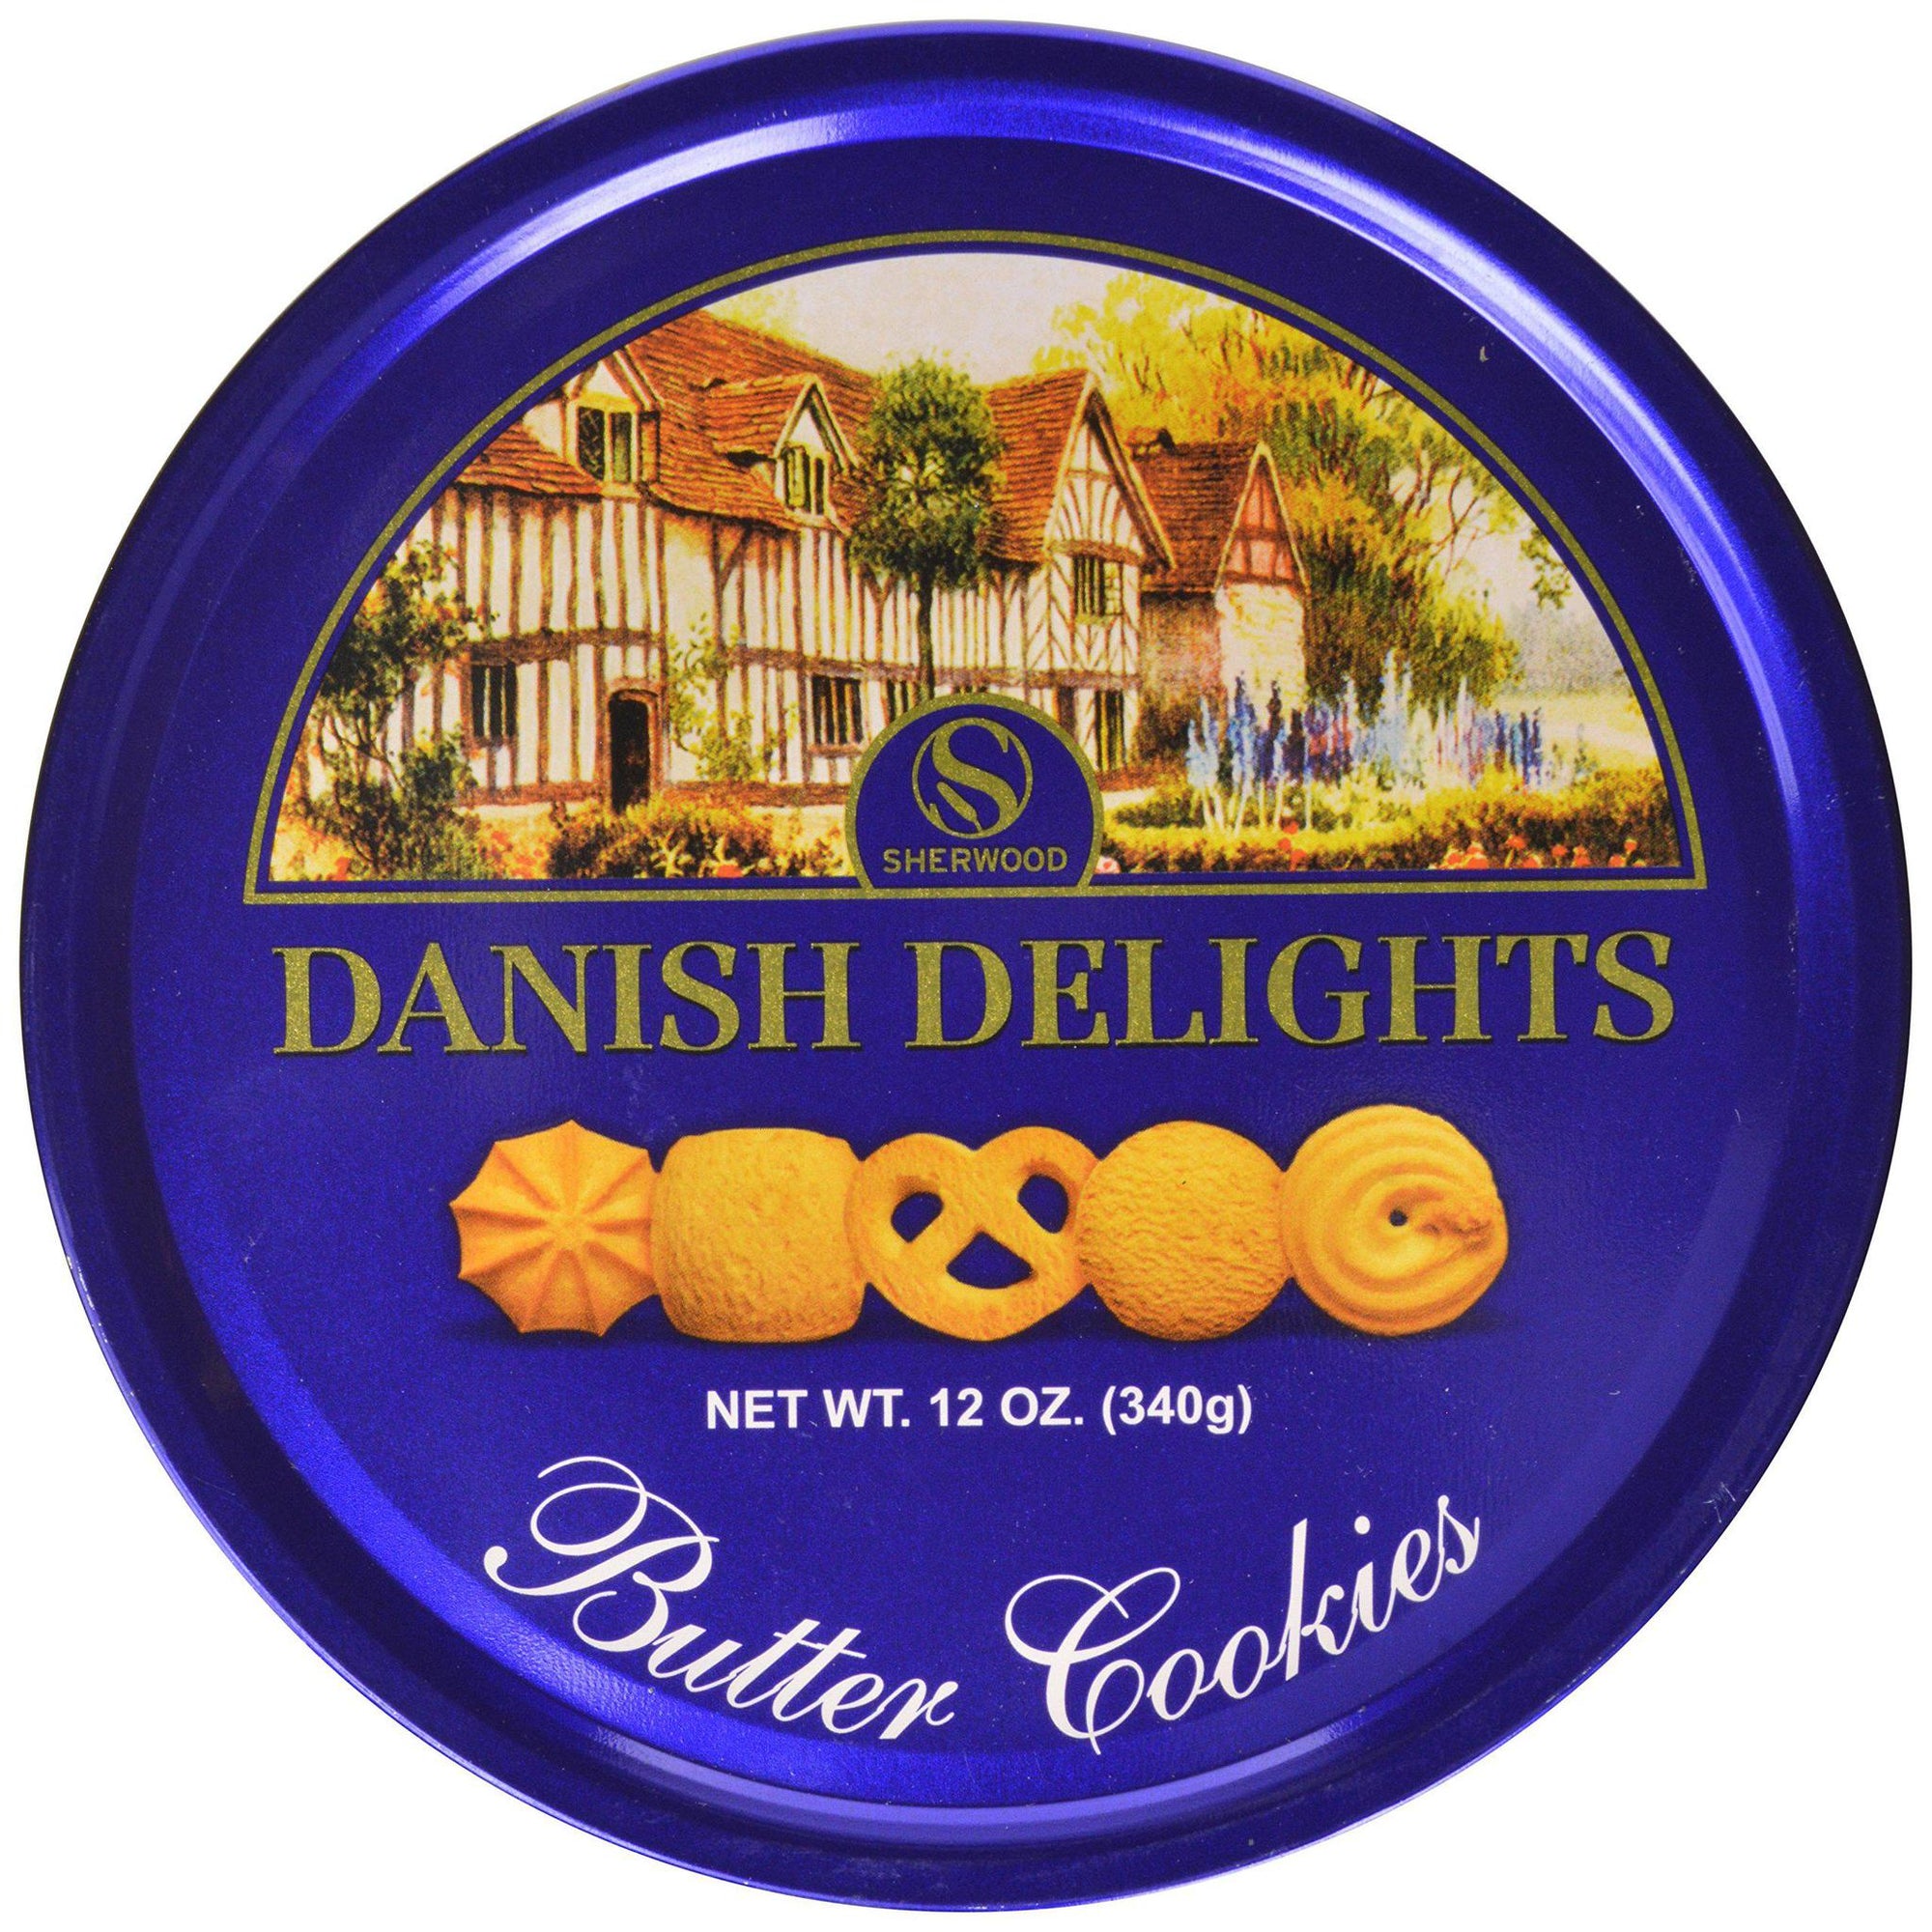 Danish Delights Butter Cookies Tin